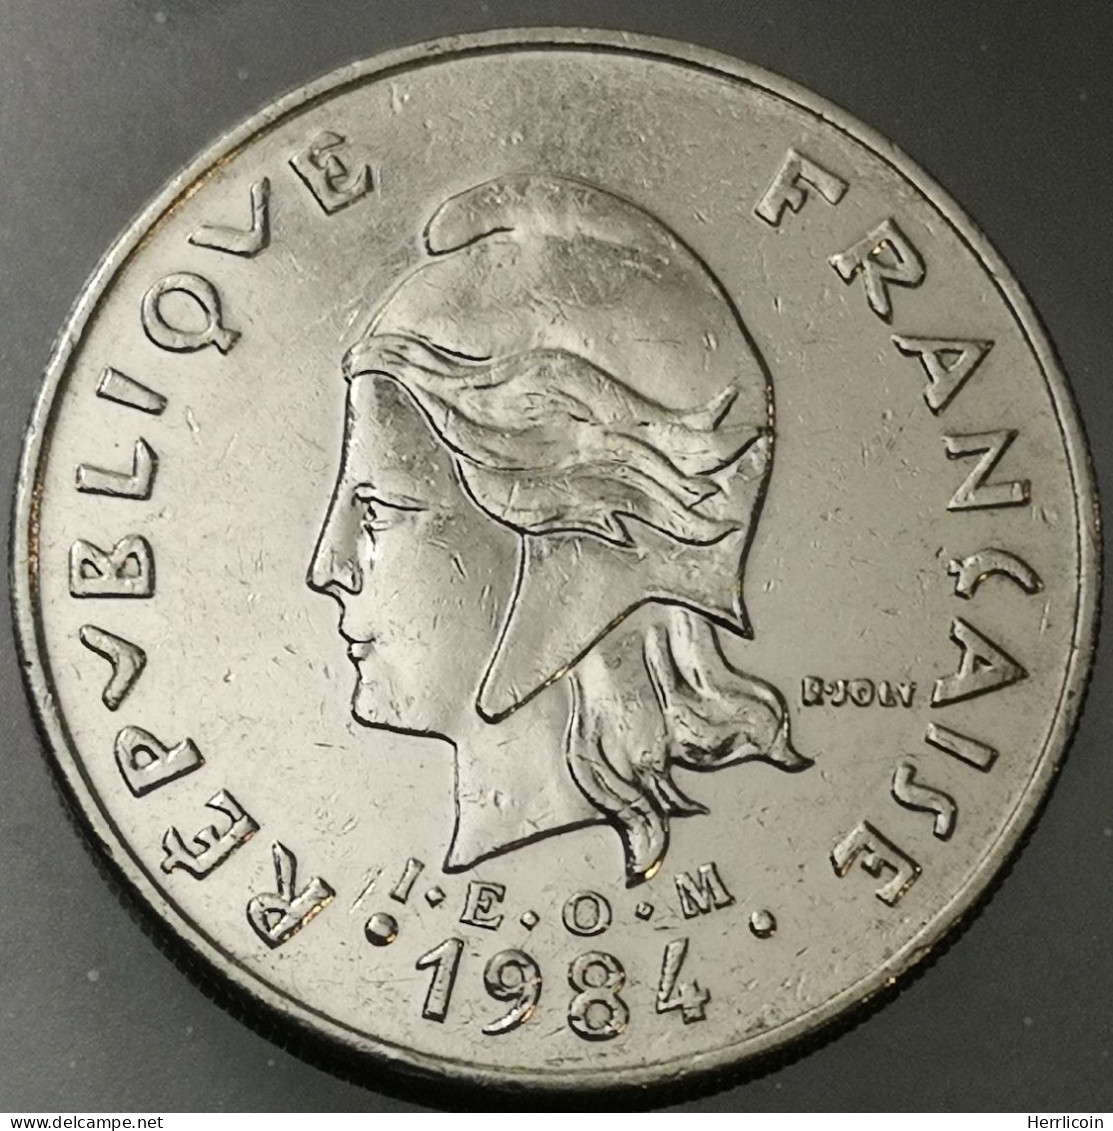 Monnaie Polynésie Française - 1984  - 20 Francs IEOM - Polynésie Française